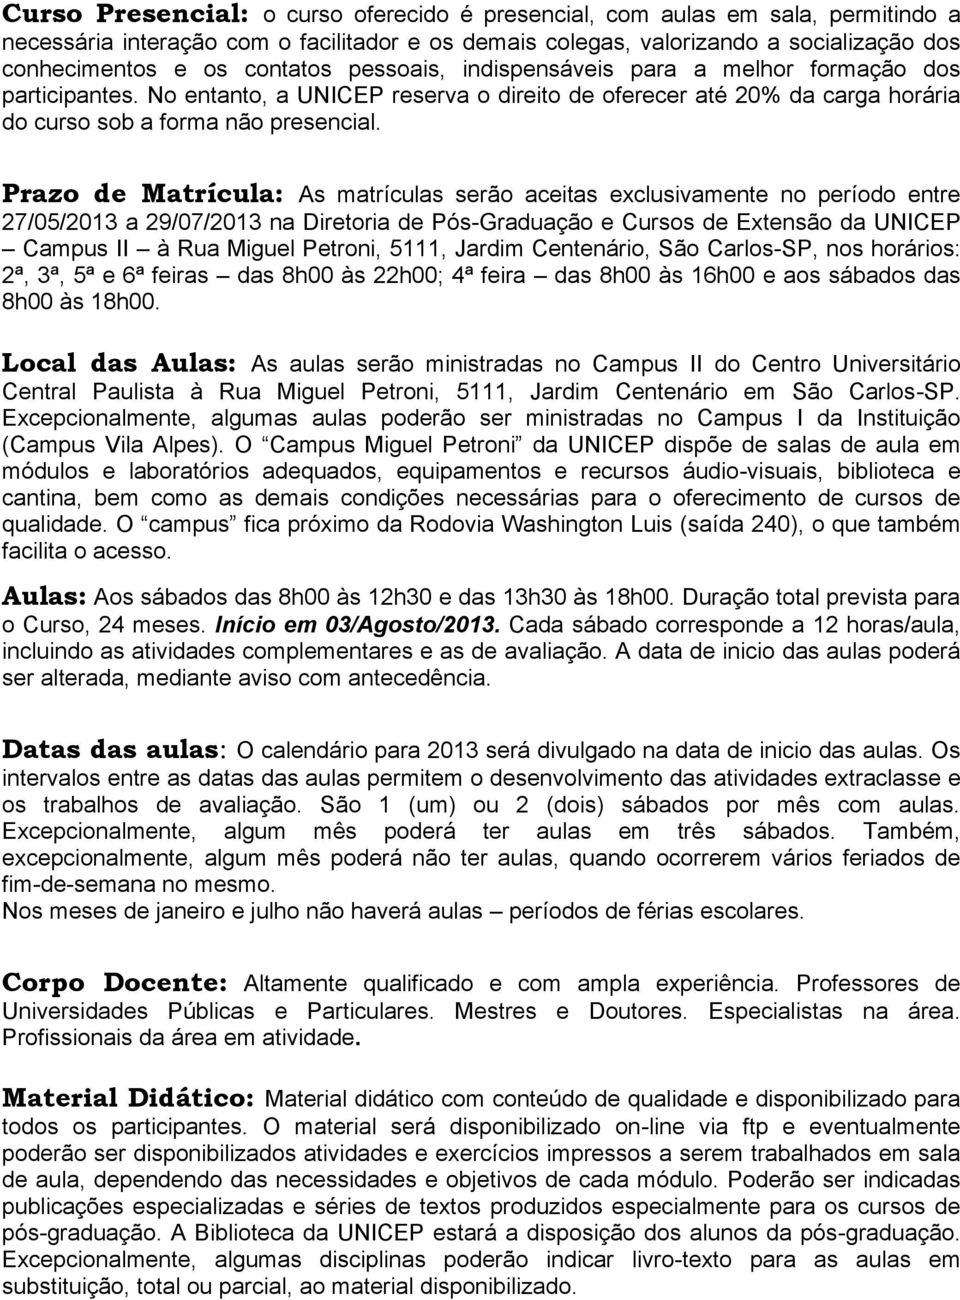 Prazo de Matrícula: As matrículas serão aceitas exclusivamente no período entre 27/05/2013 a 29/07/2013 na Diretoria de Pós-Graduação e Cursos de Extensão da UNICEP Campus II à Rua Miguel Petroni,